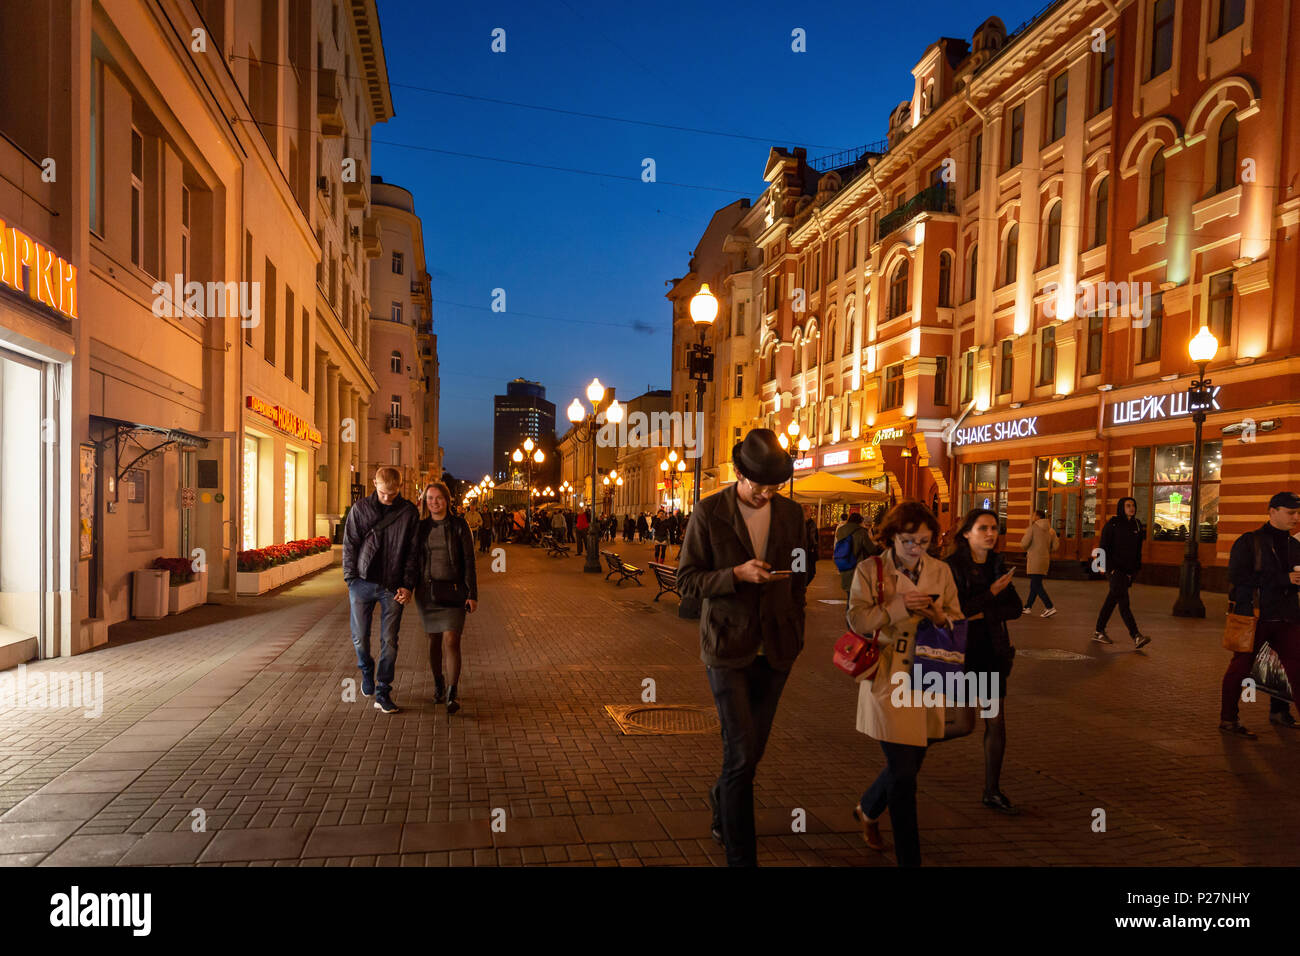 Moskau, Russland - 21. September 2017: Volk und historischen Gebäude, das von warmen Licht Arbat dekoriert Straße zu Fuß in der Dämmerung mit blauem Himmel. Stockfoto